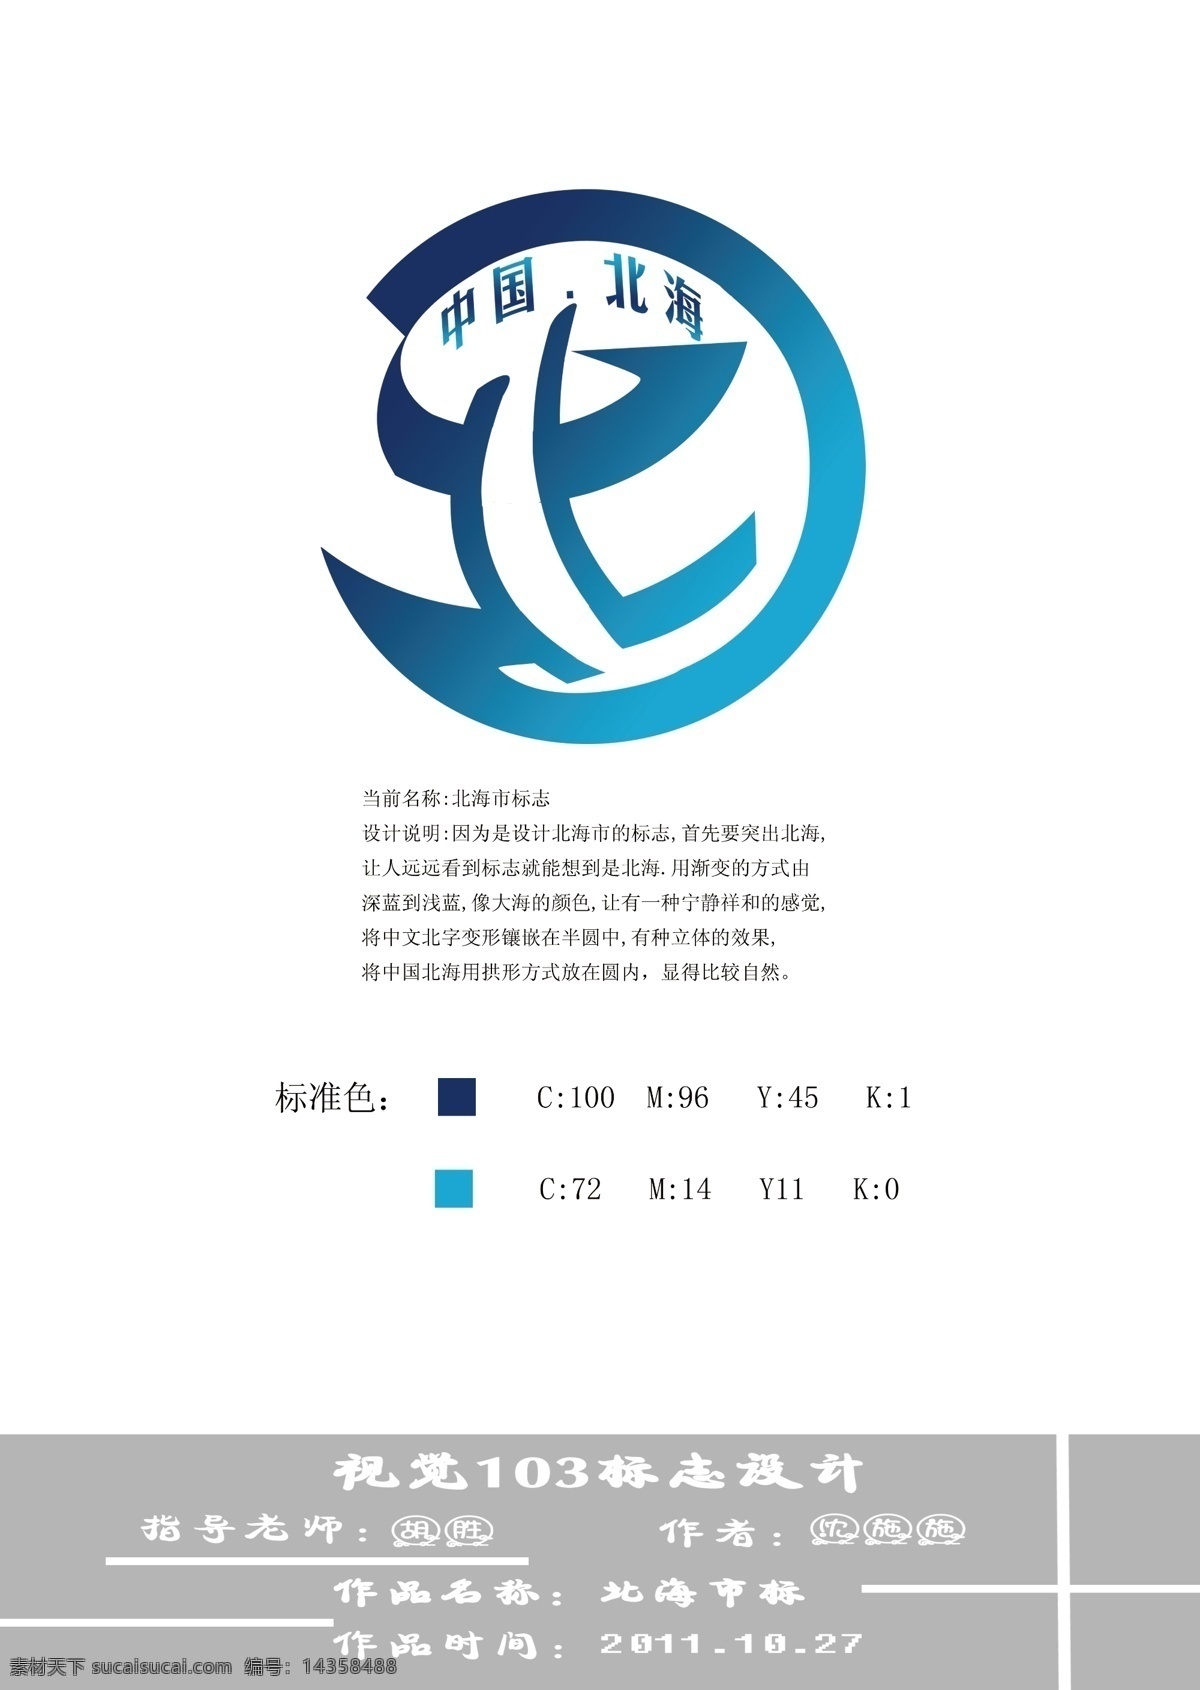 logo 北 变形 标志 标志设计 城市 大气 广告设计模板 圆形 中国 海边 蓝色 北海 城市标志 圆滑 源文件 psd源文件 文件